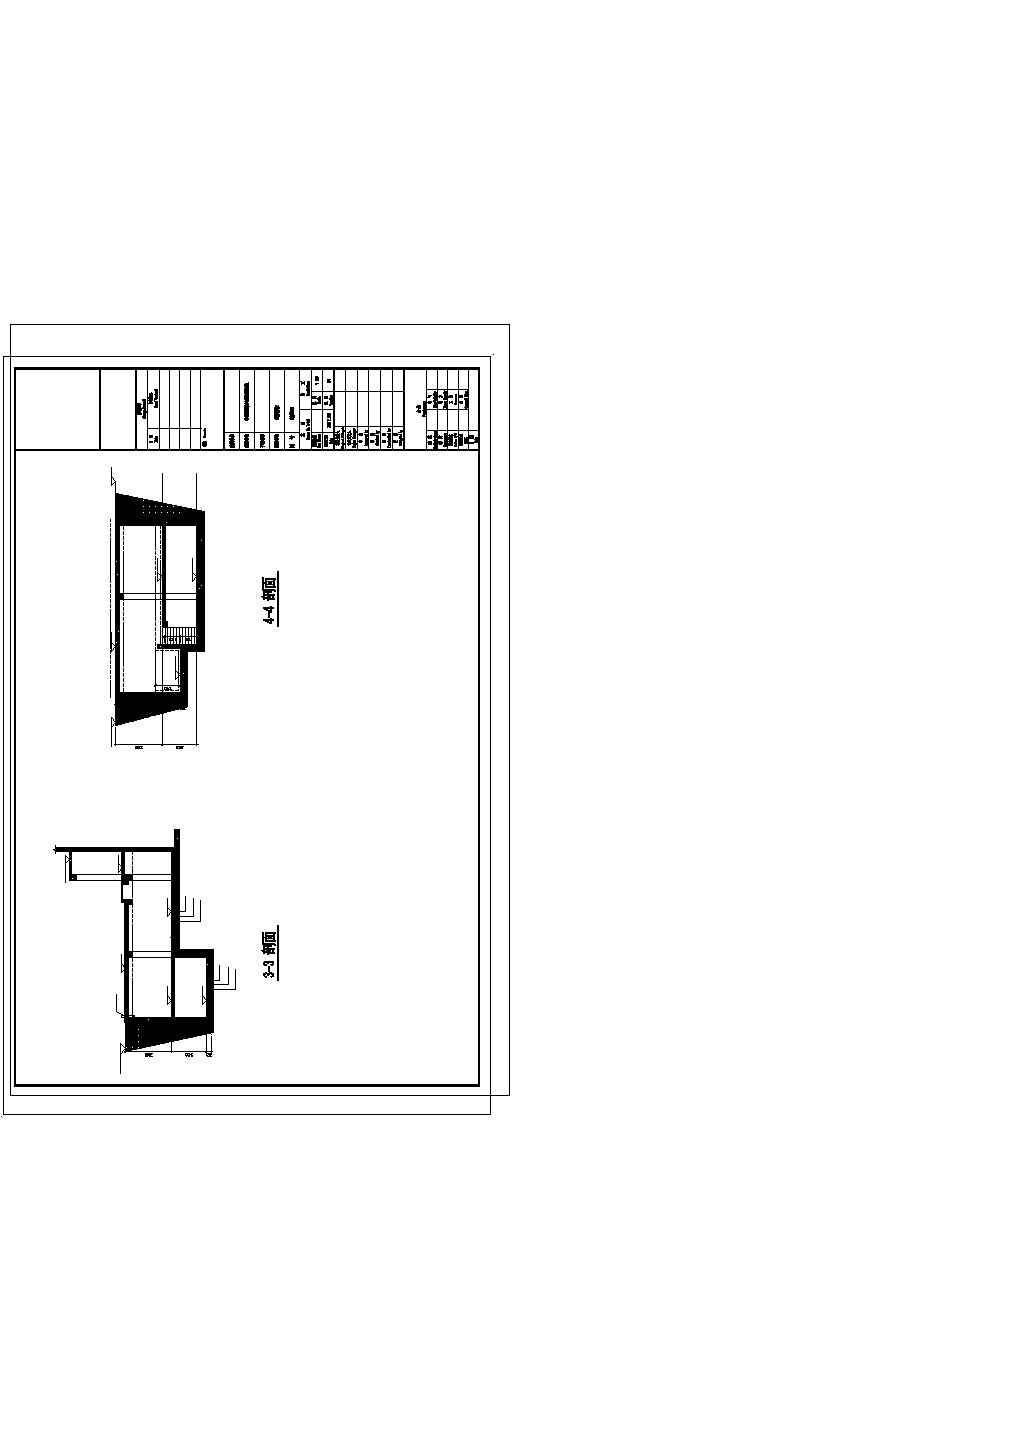 新建别墅地下室及扩建地上结构施工图（剪力墙结构、基础模板图+基础筏板配筋图 ）